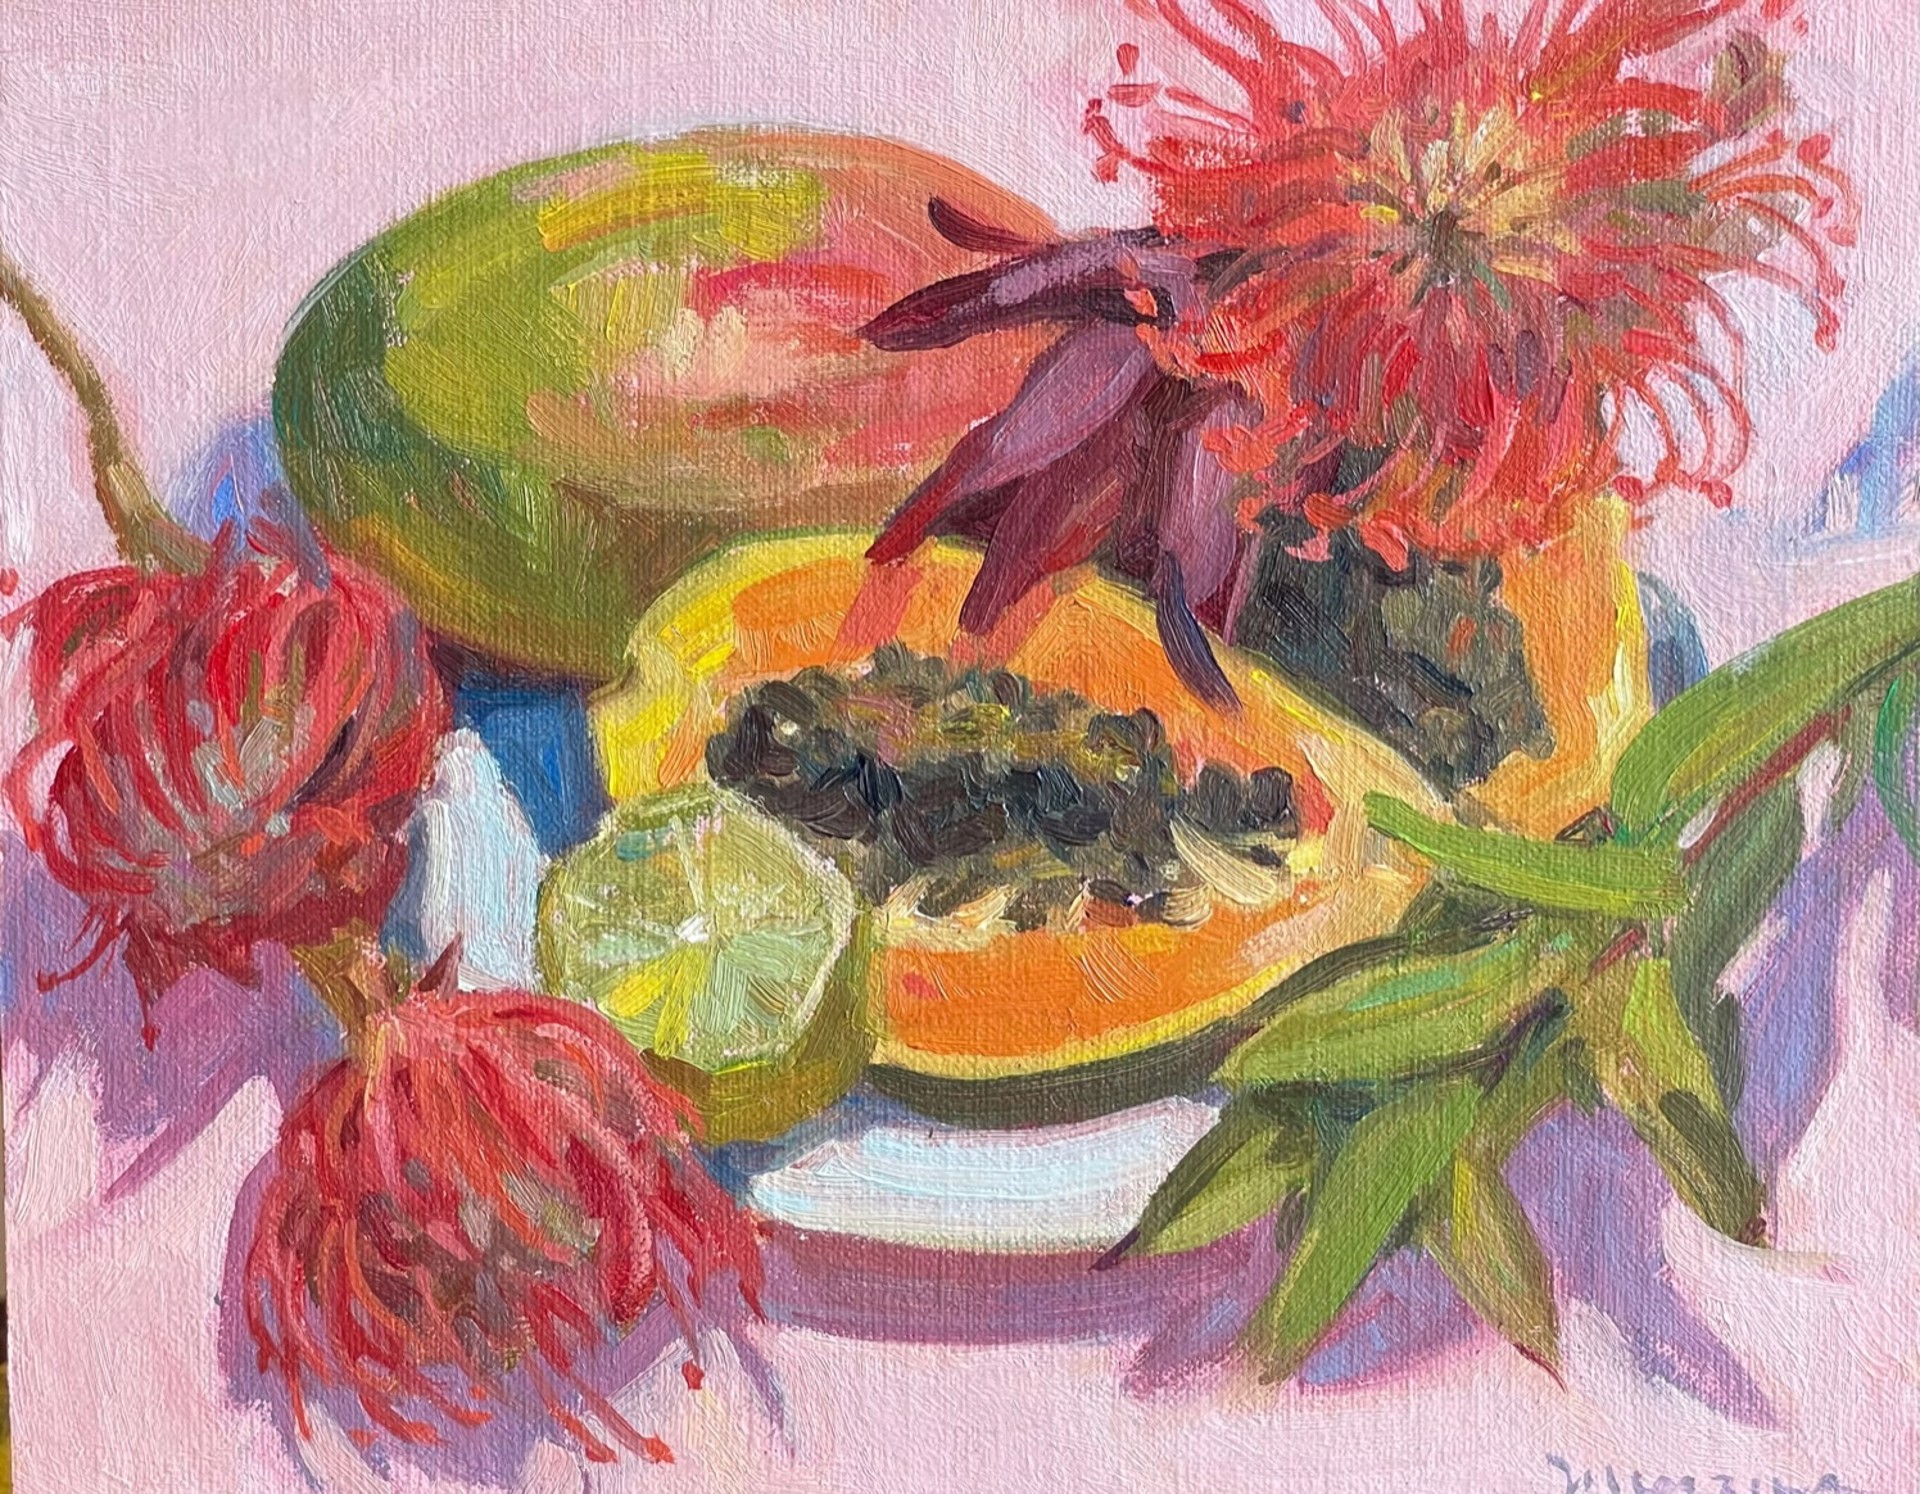 Papaya, Mango & Protea by Adrienne Mierzwa